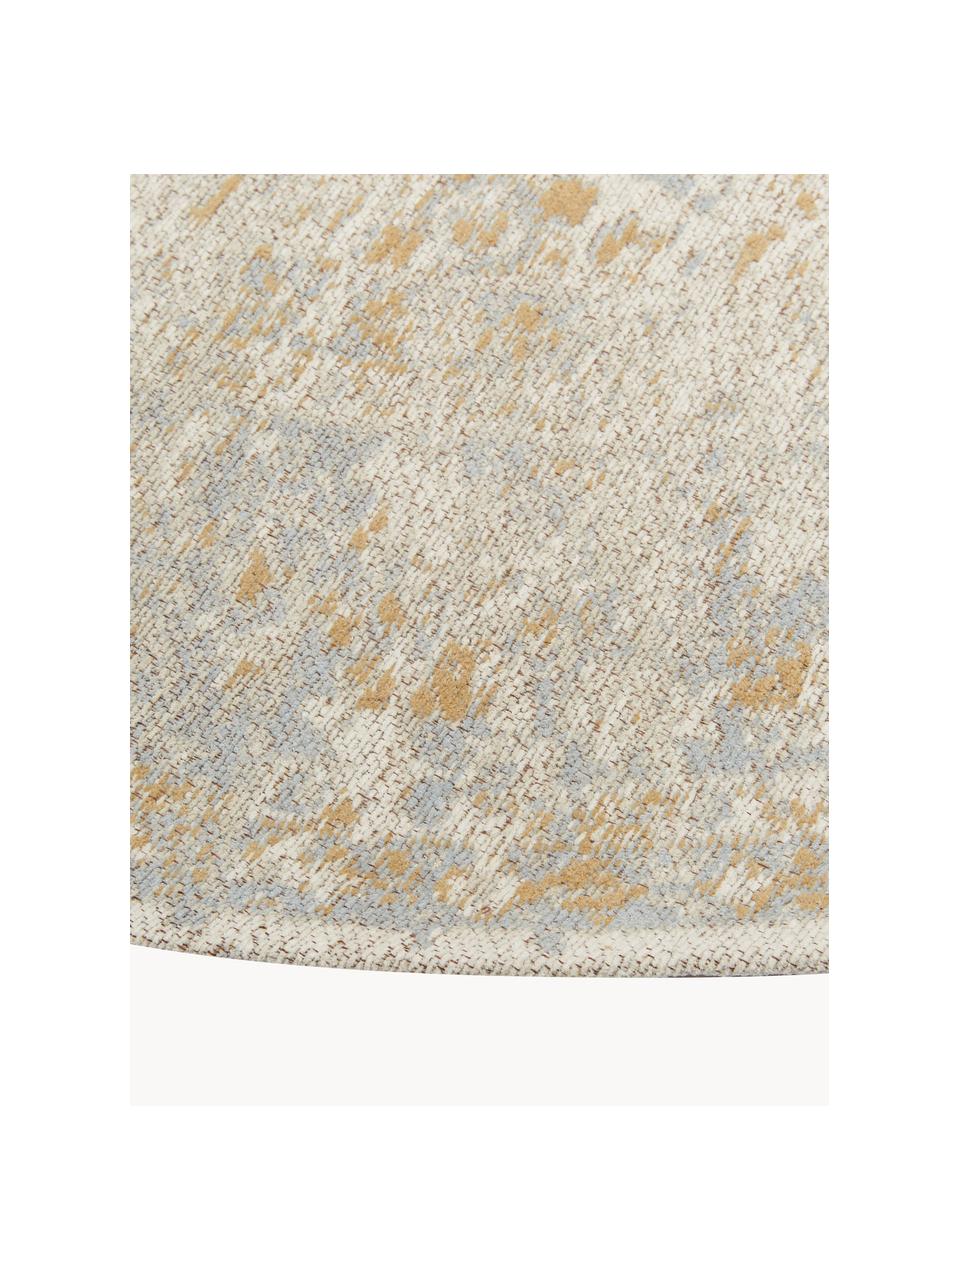 Okrúhly ženilkový koberec Loire, ručne tkaný, Béžová, Ø 200 cm (veľkosť L)